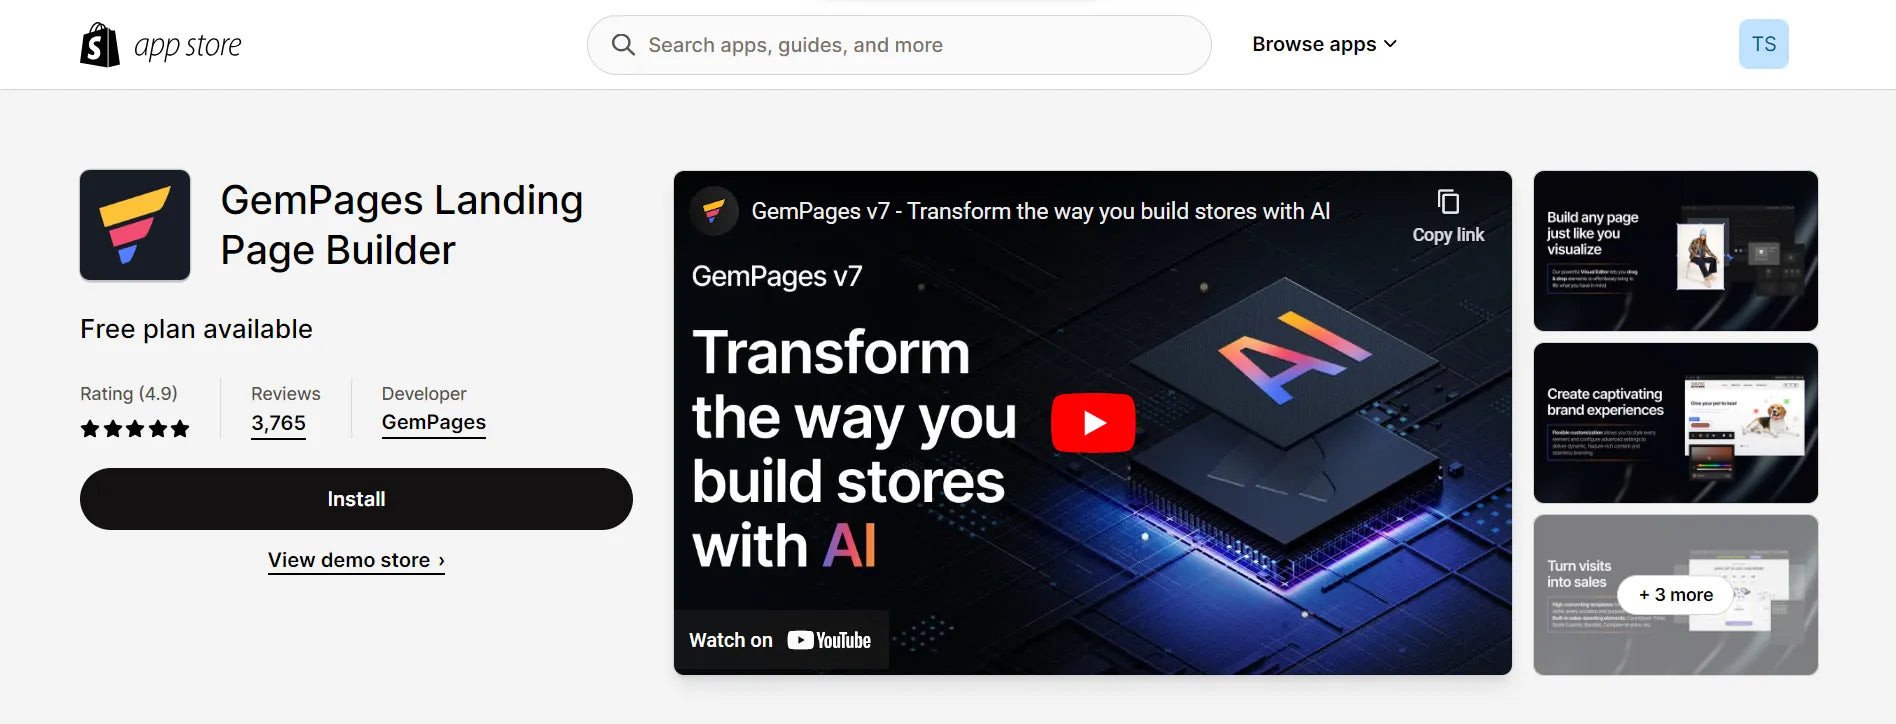 GemPages Landing Page Builder app